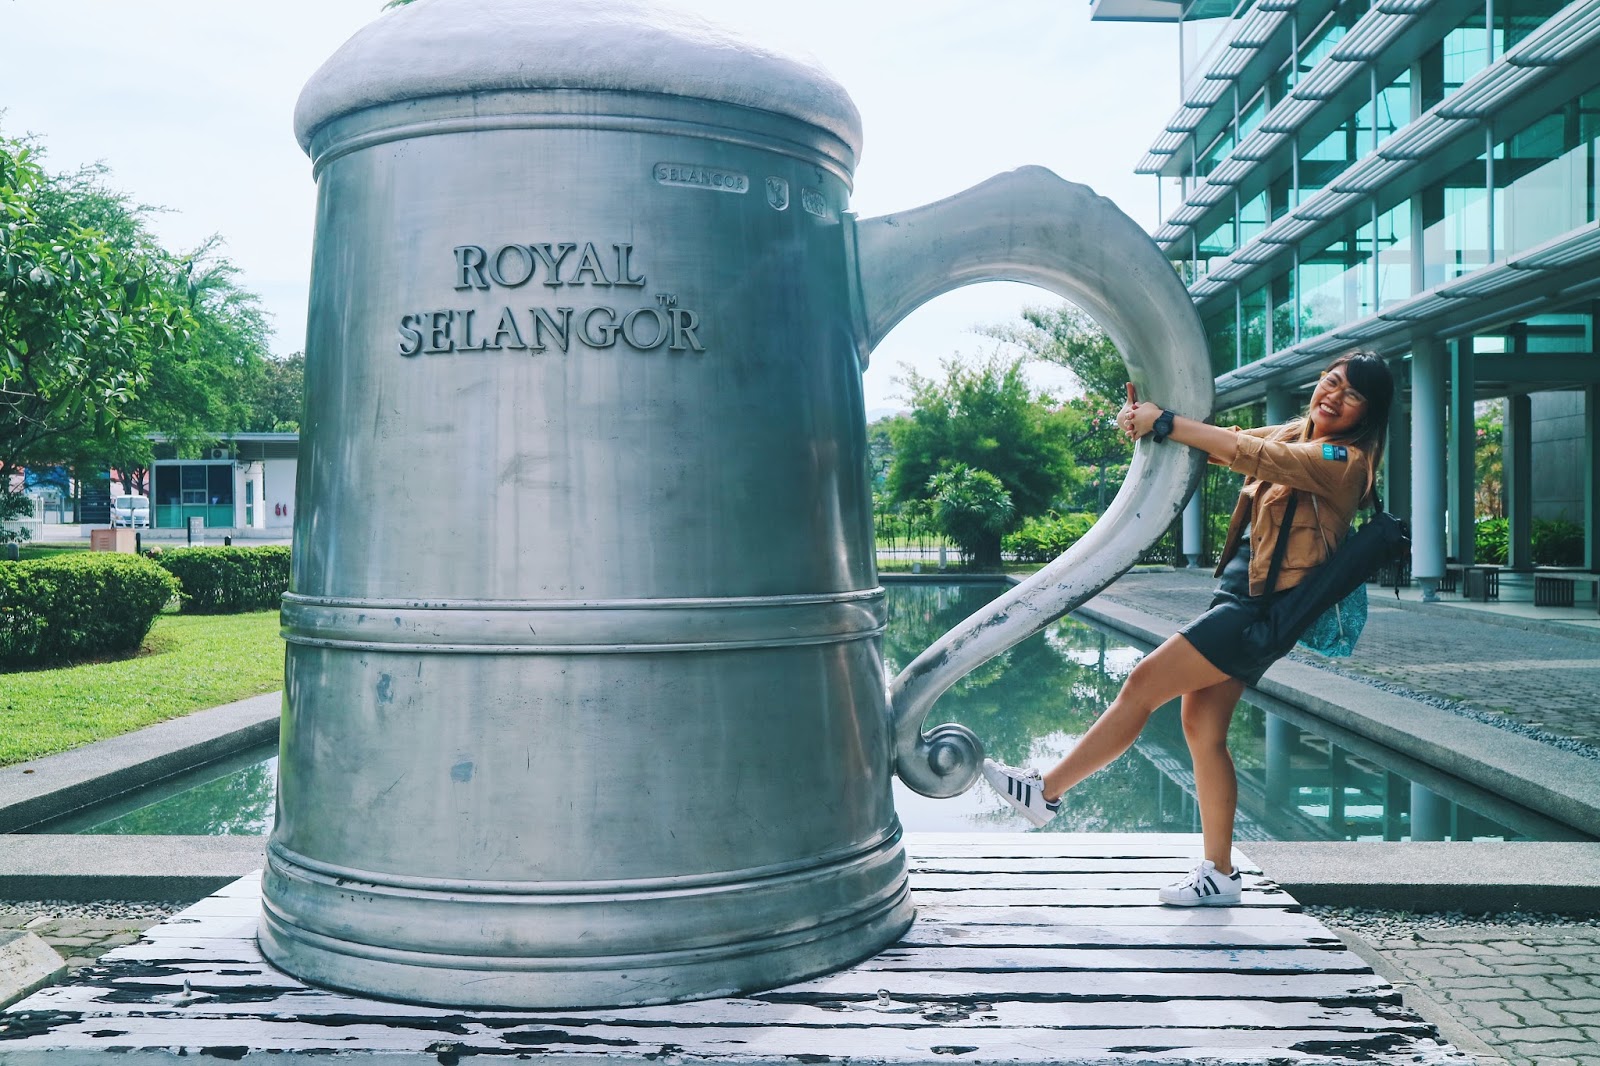 World's biggest pewter tankard - Royak Selangcor